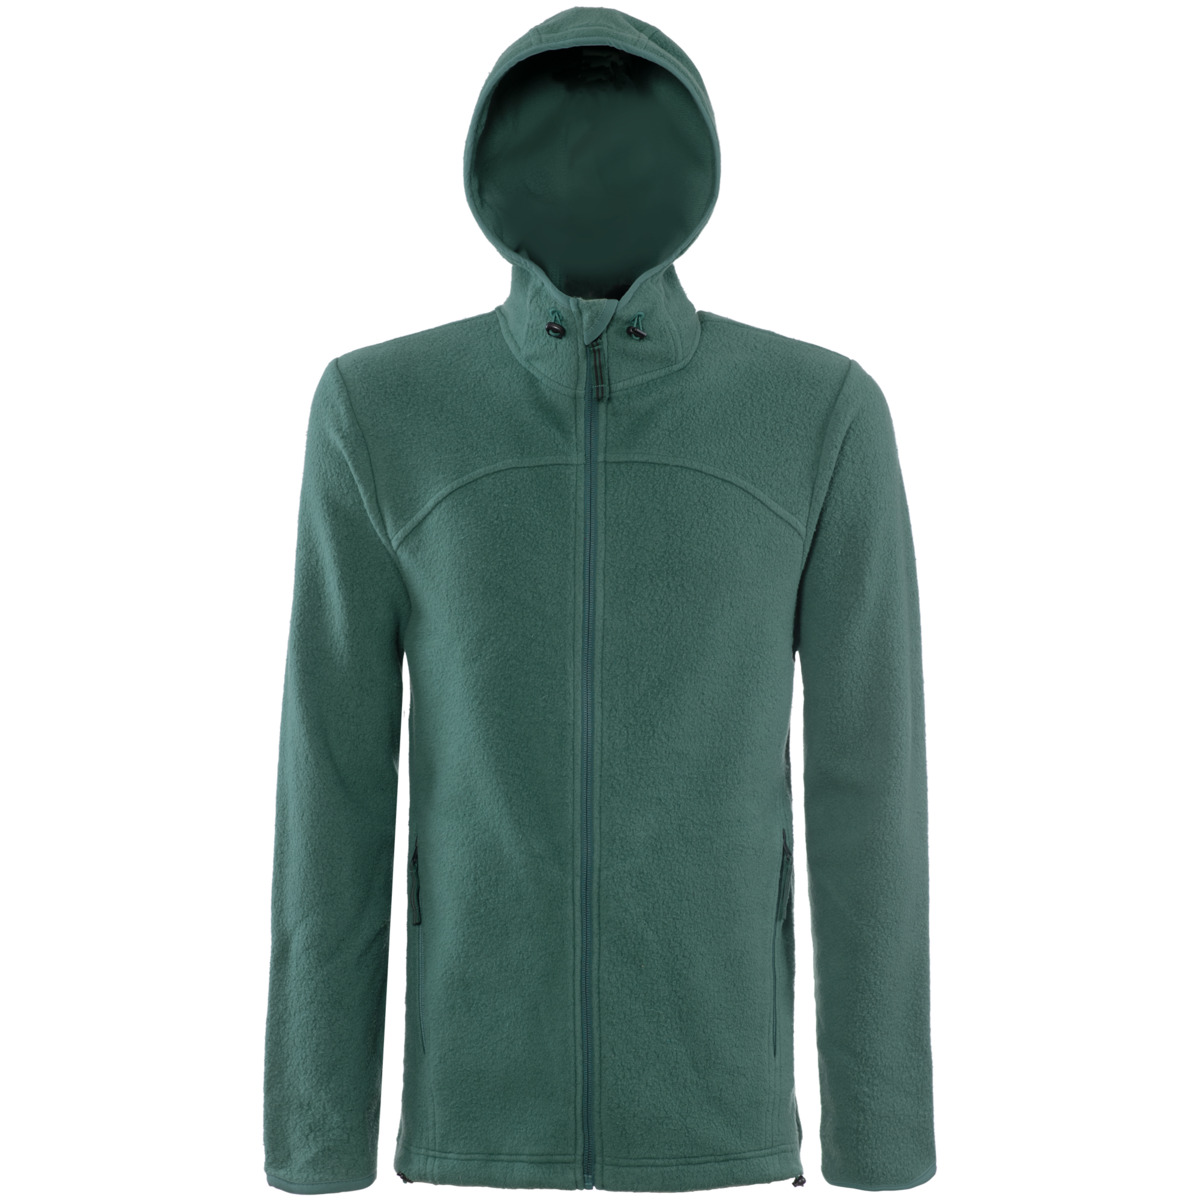 Green Fleece jacket, NORDIAN